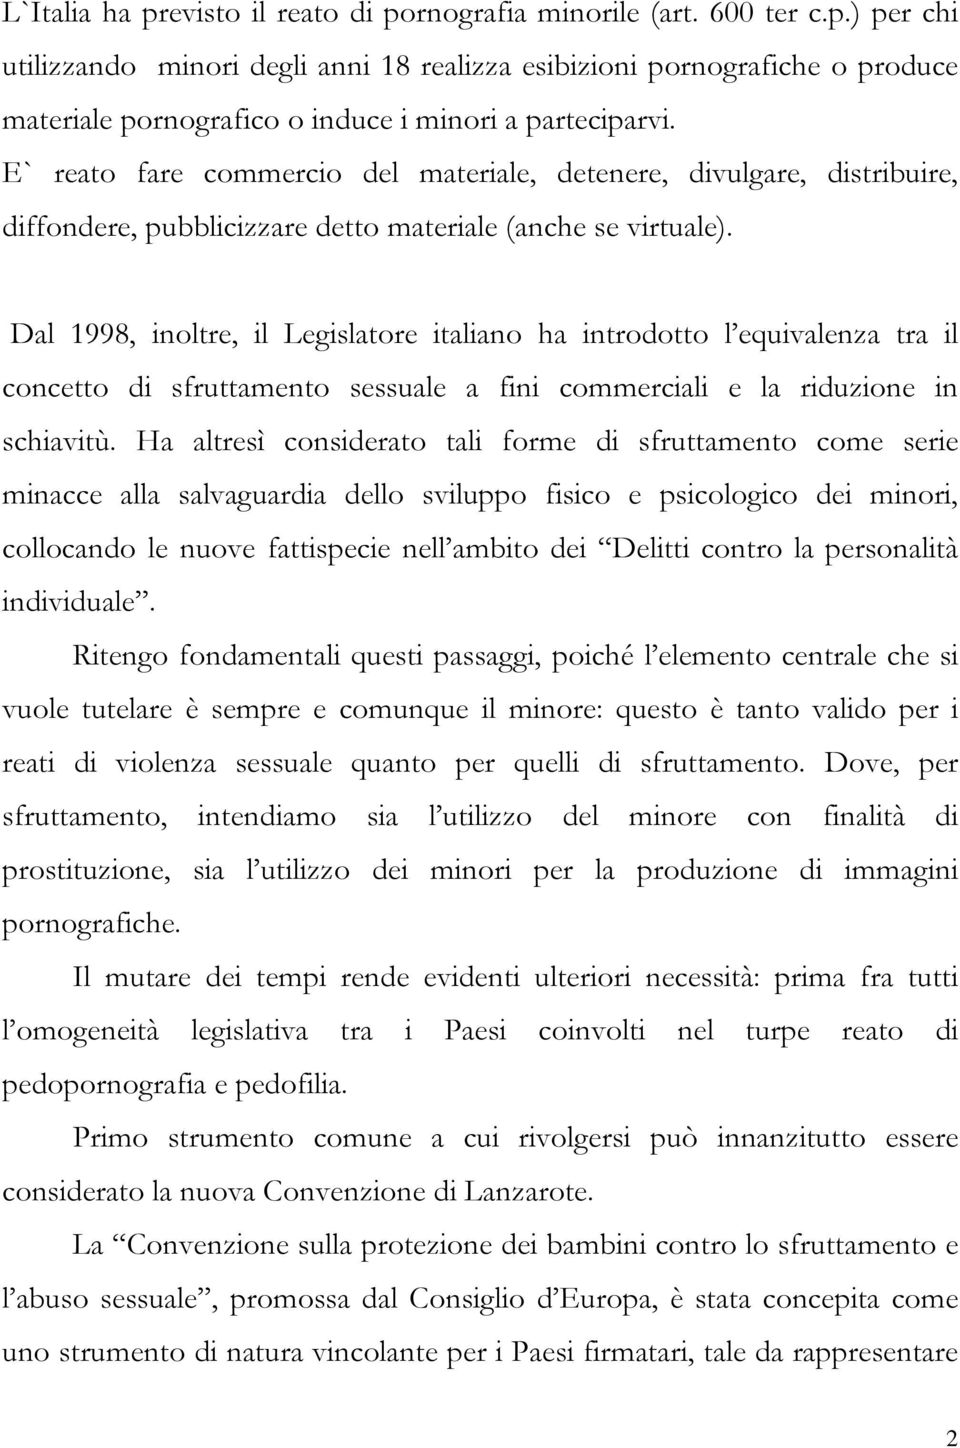 Dal 1998, inoltre, il Legislatore italiano ha introdotto l equivalenza tra il concetto di sfruttamento sessuale a fini commerciali e la riduzione in schiavitù.